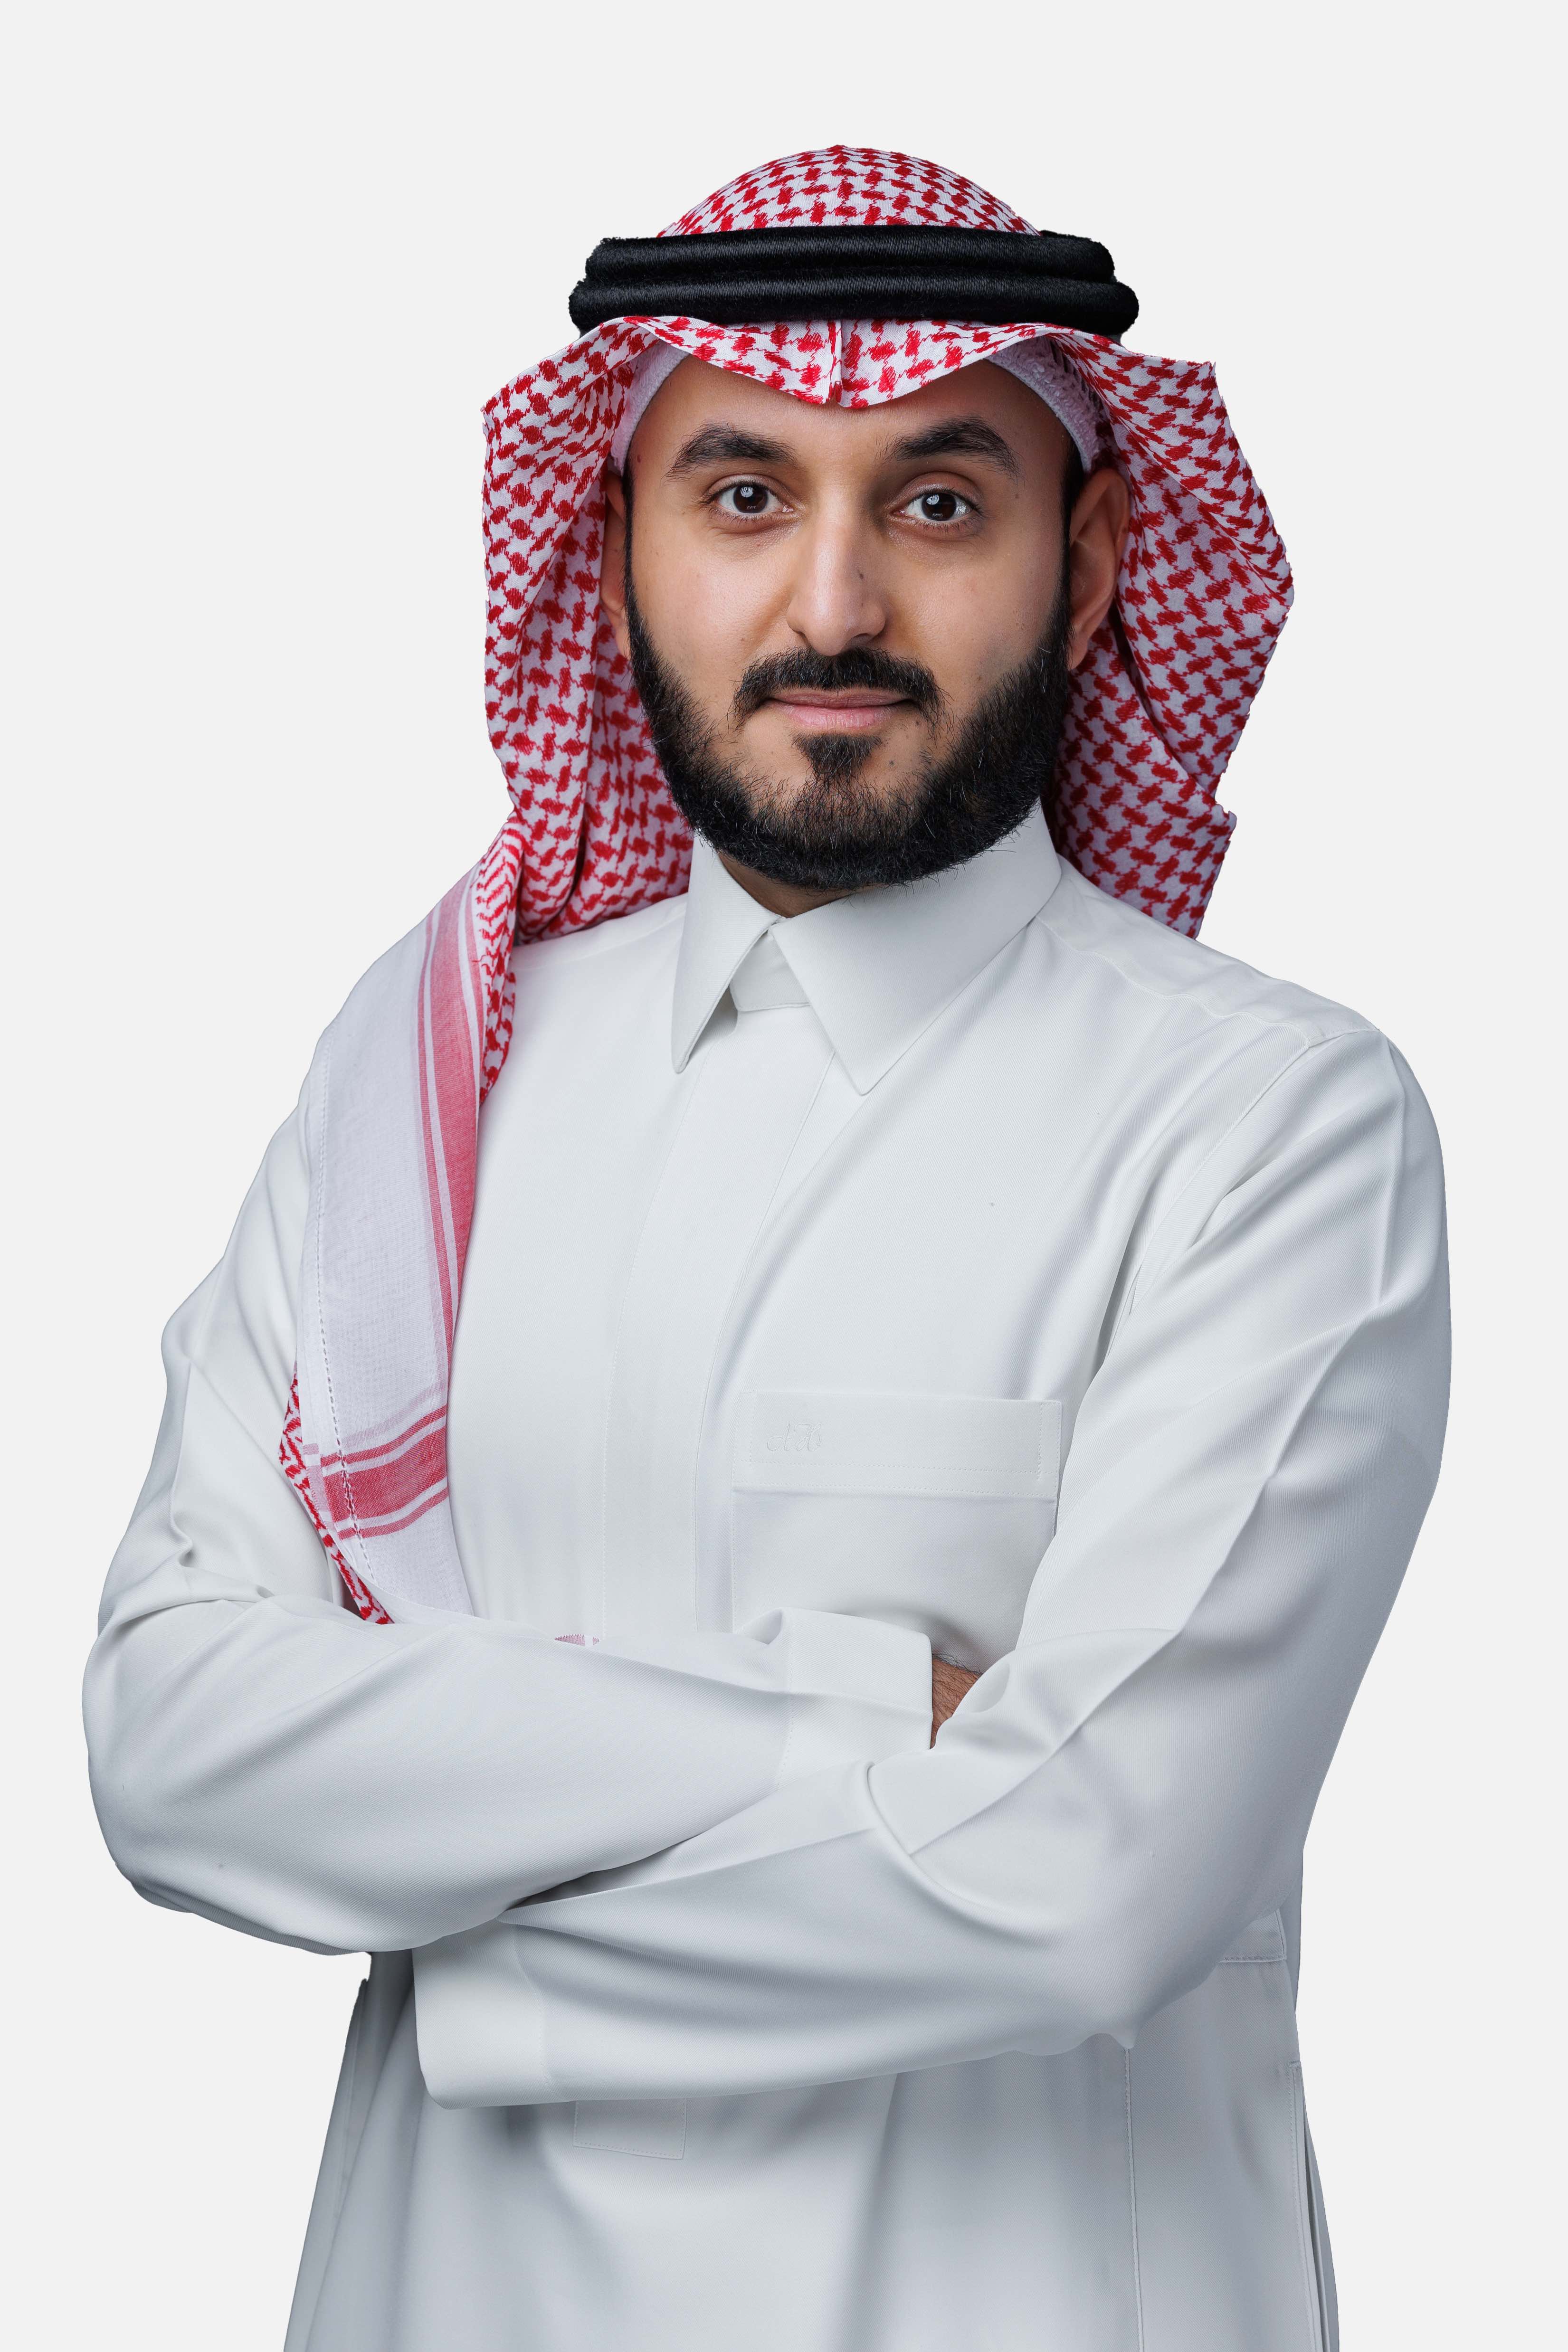 Abdullah AlSaeed